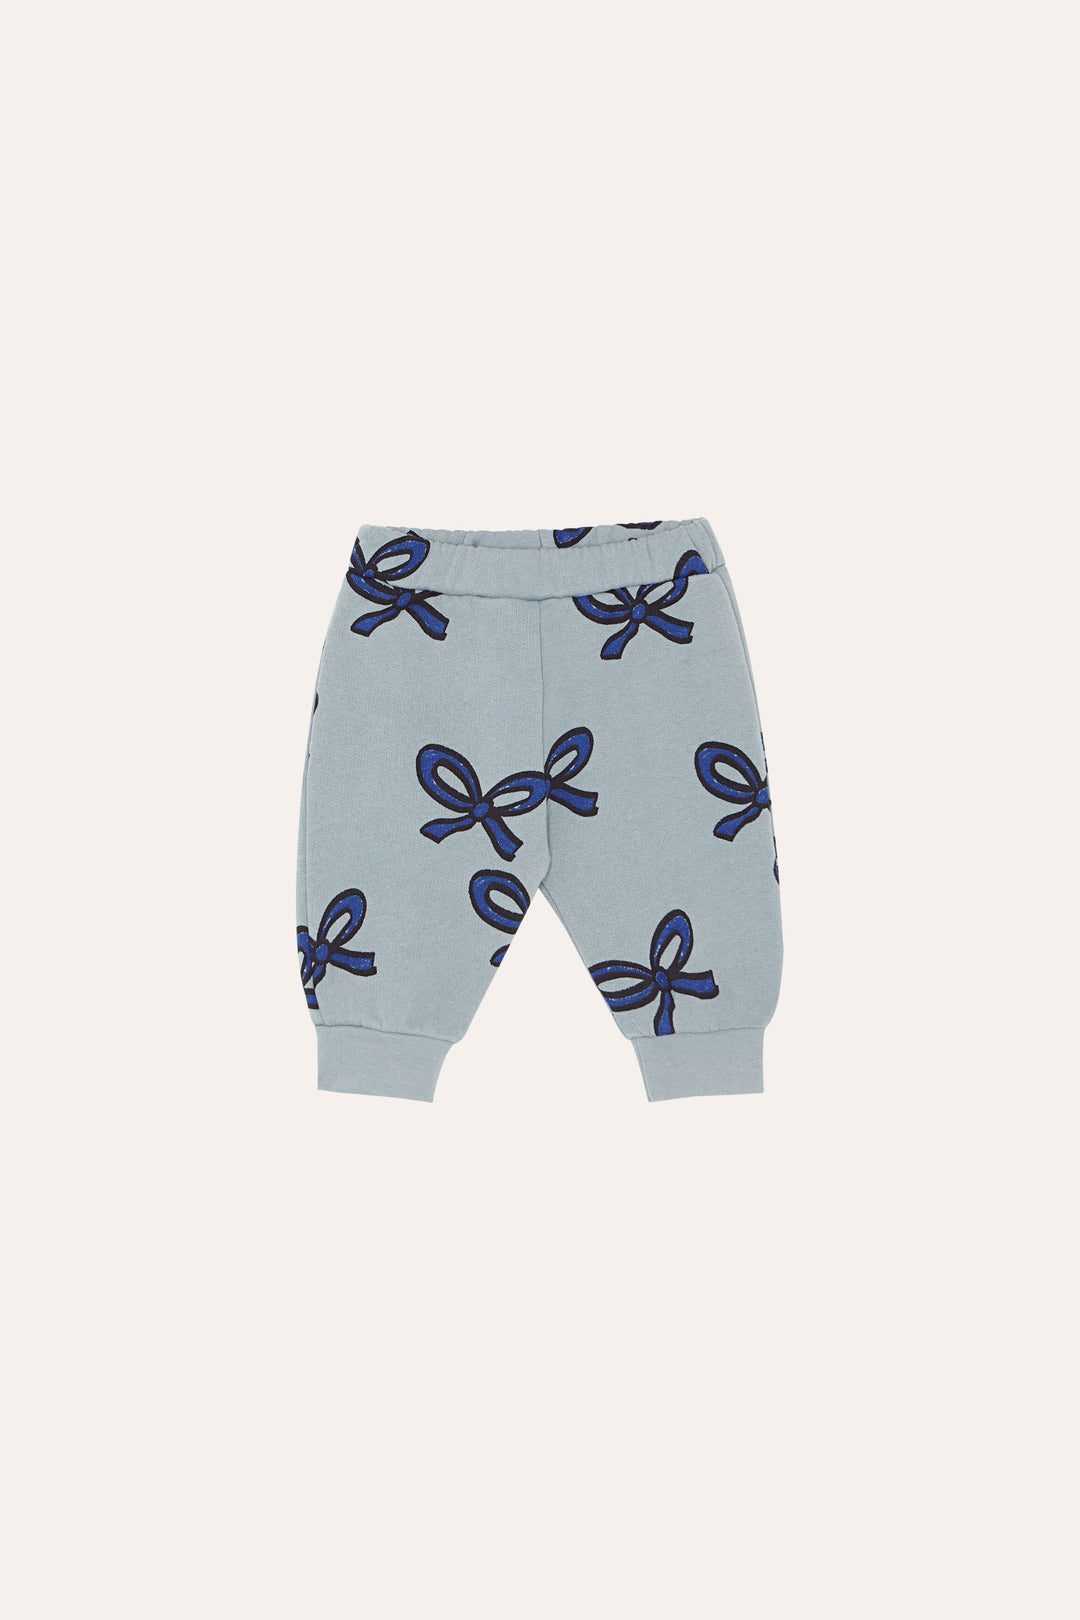 Pantalon bleu pâle pour bébé avec imprimé de rubans bleu foncé